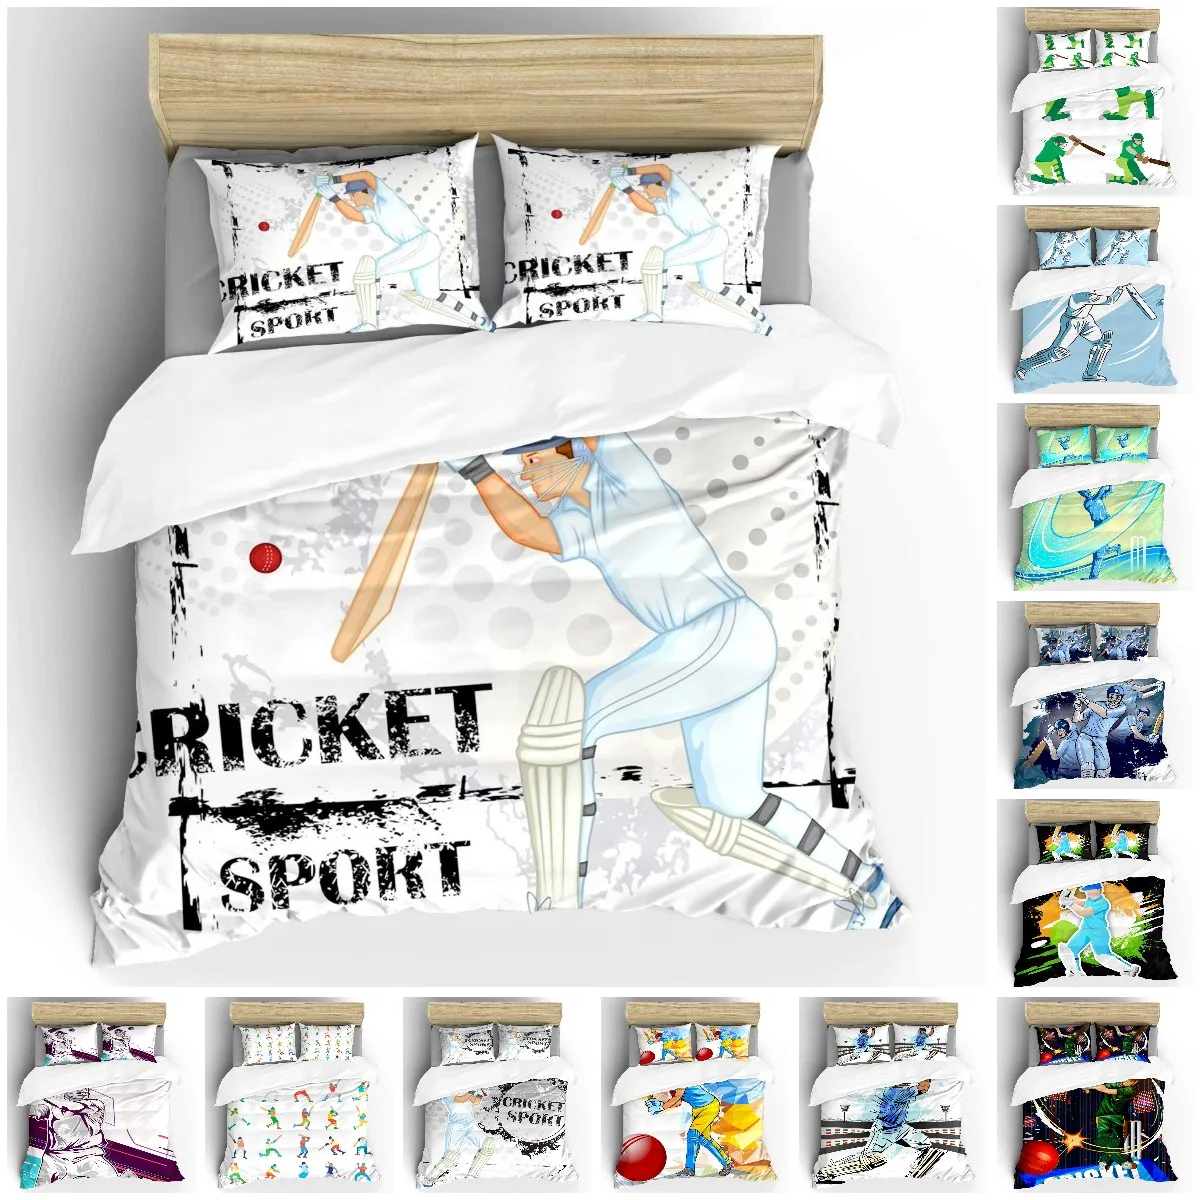 الكريكيت حاف مجموعة غطاء نمط الرياضة مجردة طقم سرير لاعب اللعب لعبة من الكريكيت مزدوجة الملكة الملك الحجم غطاء لحاف